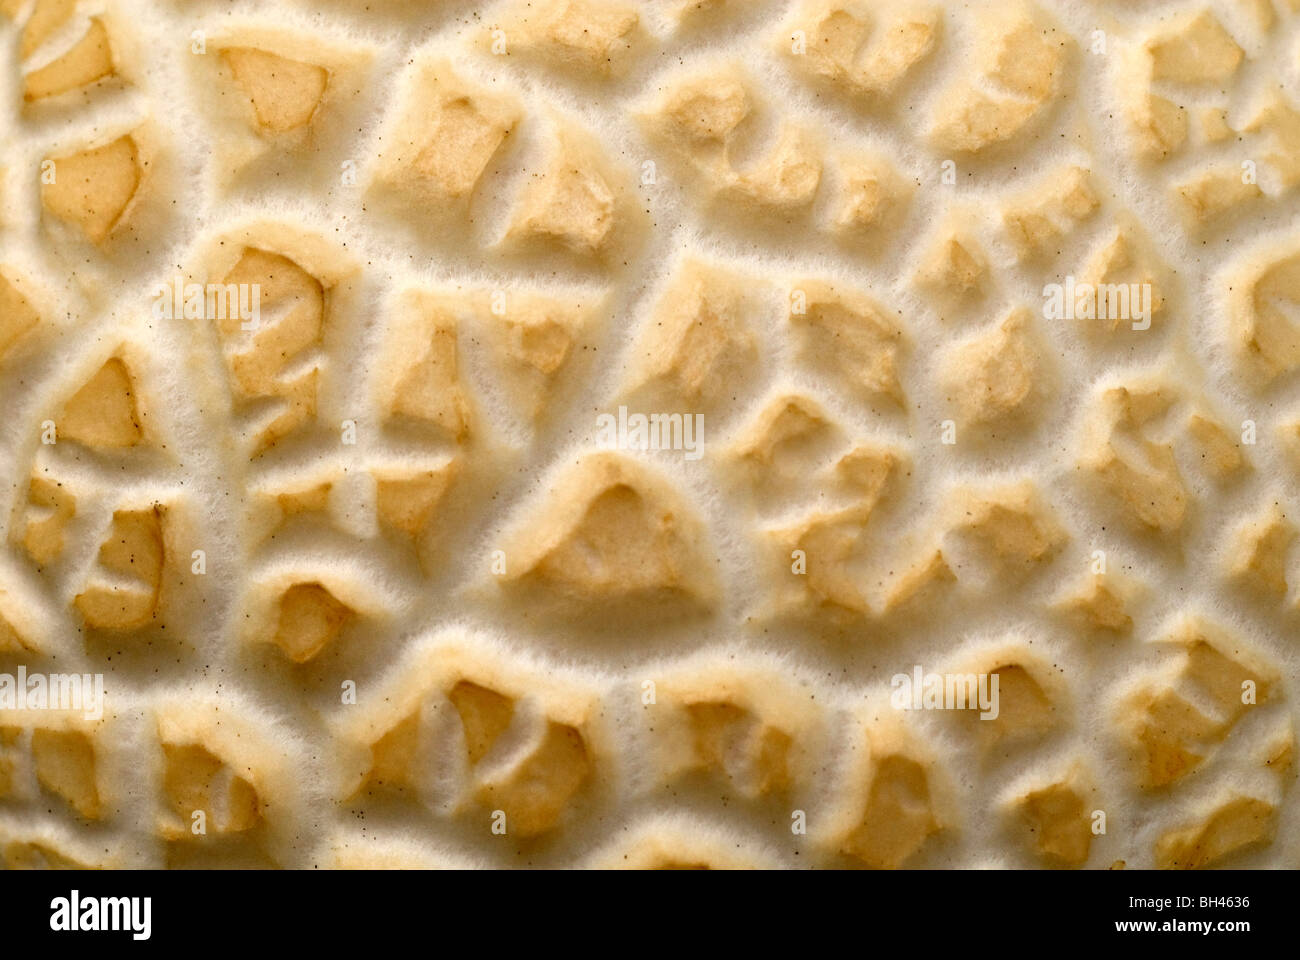 Gill de hongos en estrecha mostrando el patrón de superficie y textura. Foto de stock